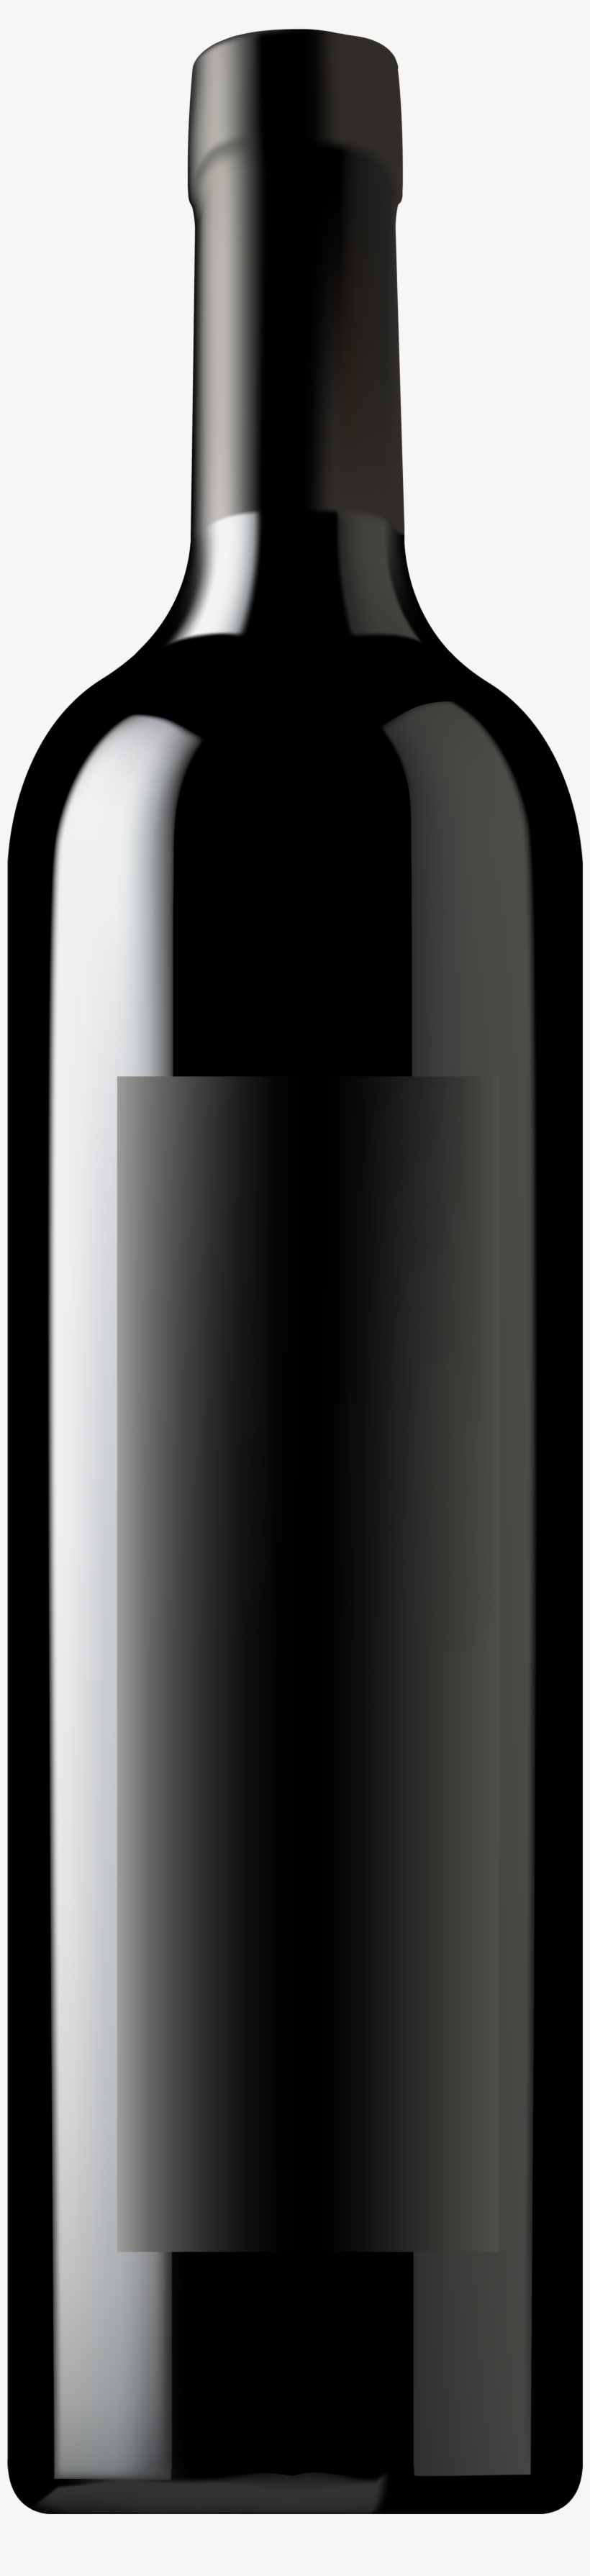 Black Wine Bottle Png, transparent png #691129